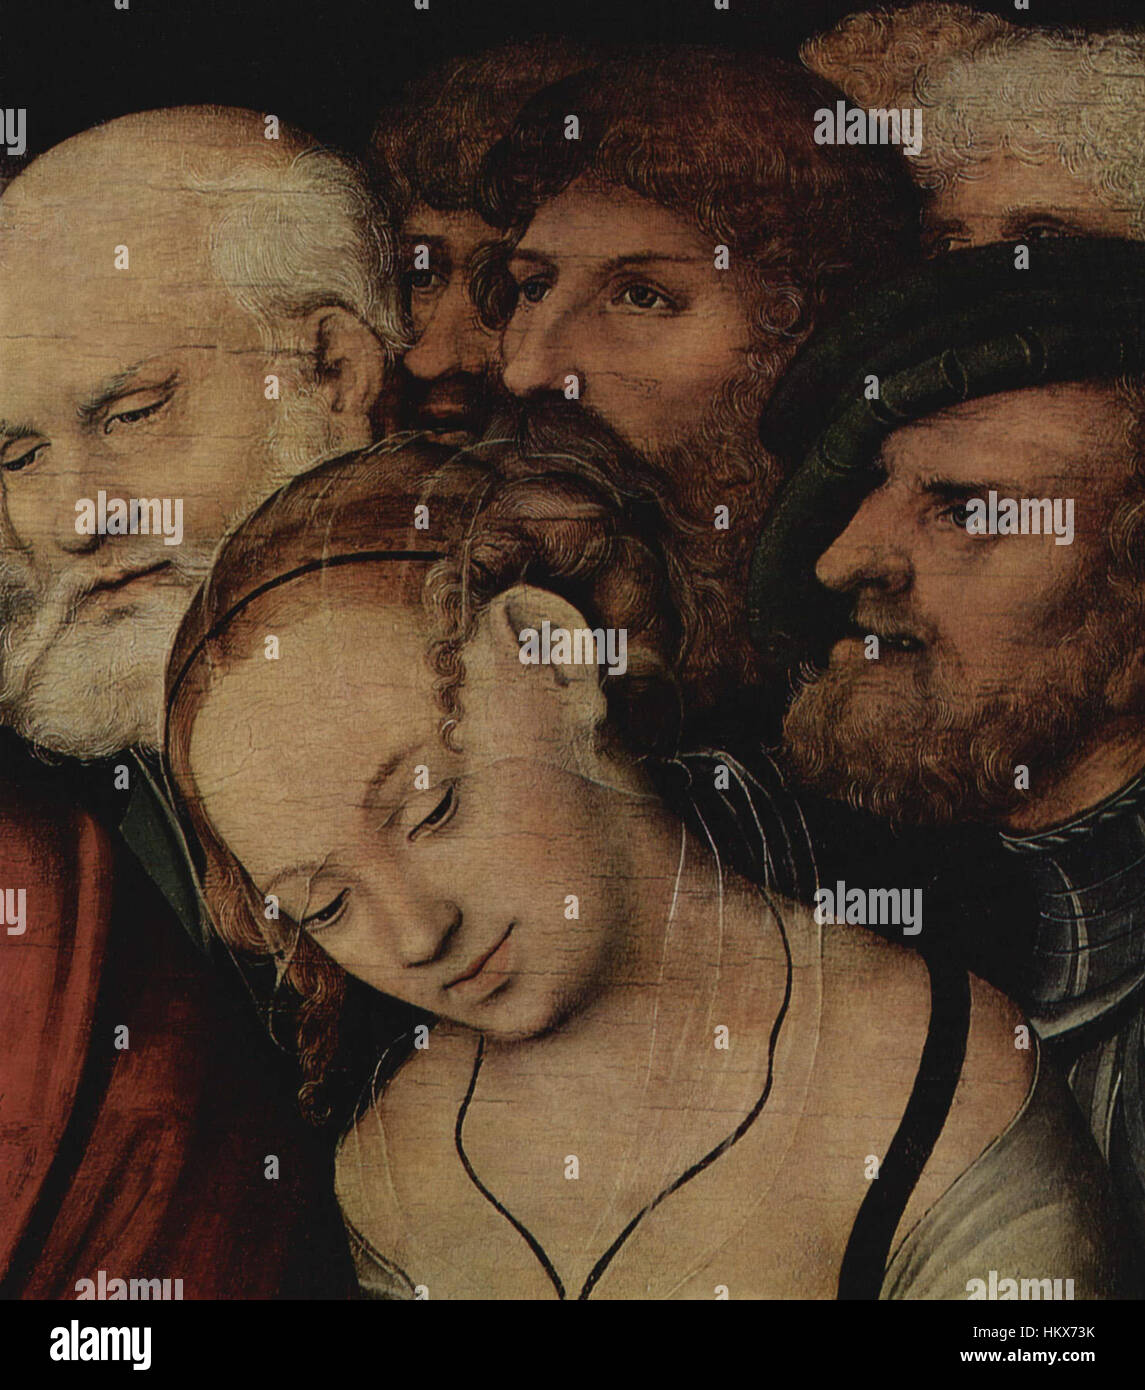 Lucas Cranach (II) - Cristo e la donna presa in adulterio - dettaglio - Eremitage Foto Stock